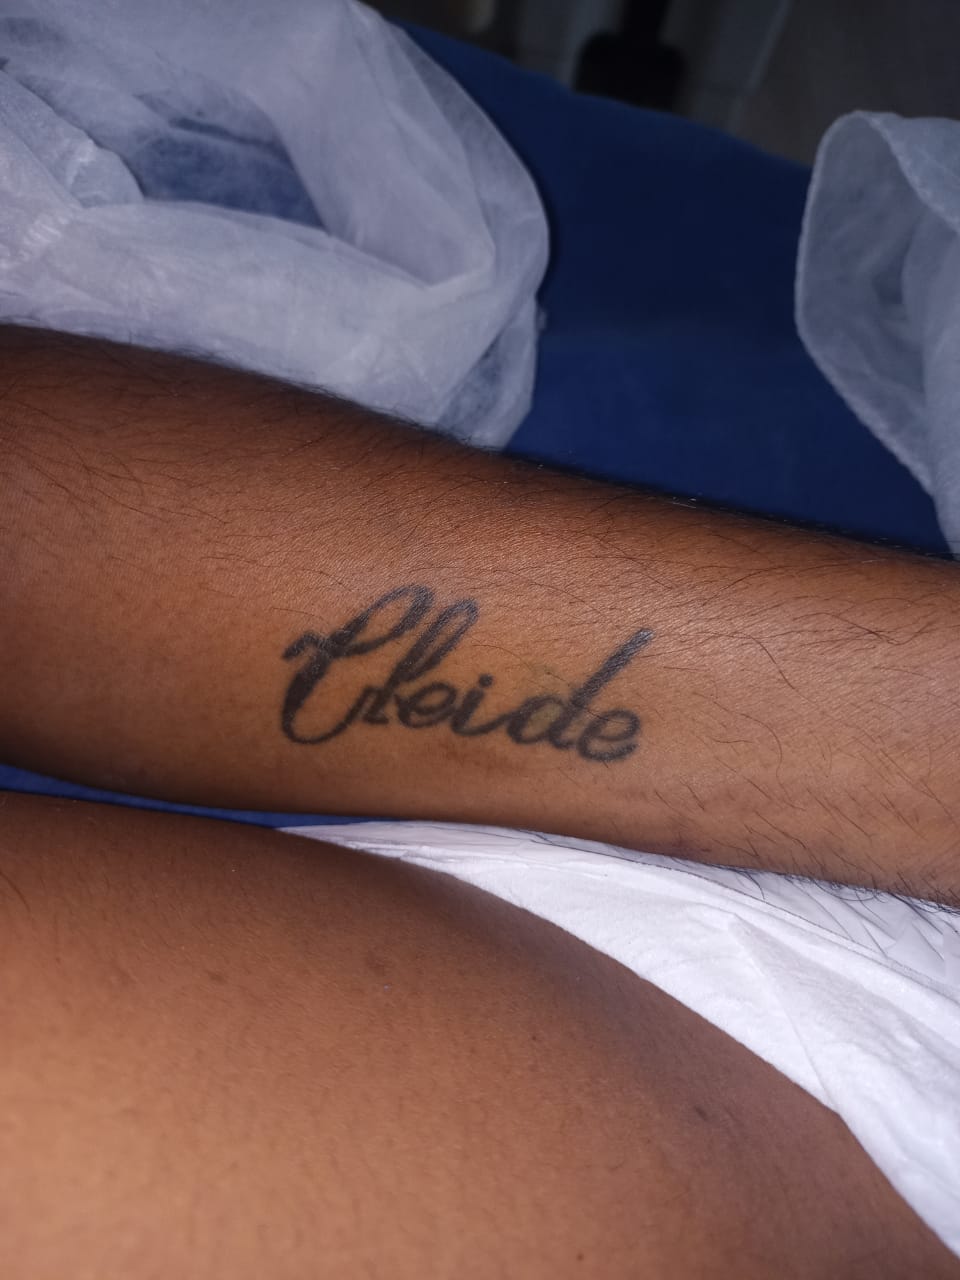 Homem internado tem tatuagem com nome Cleide - Foto: Divulgação/SES-AM